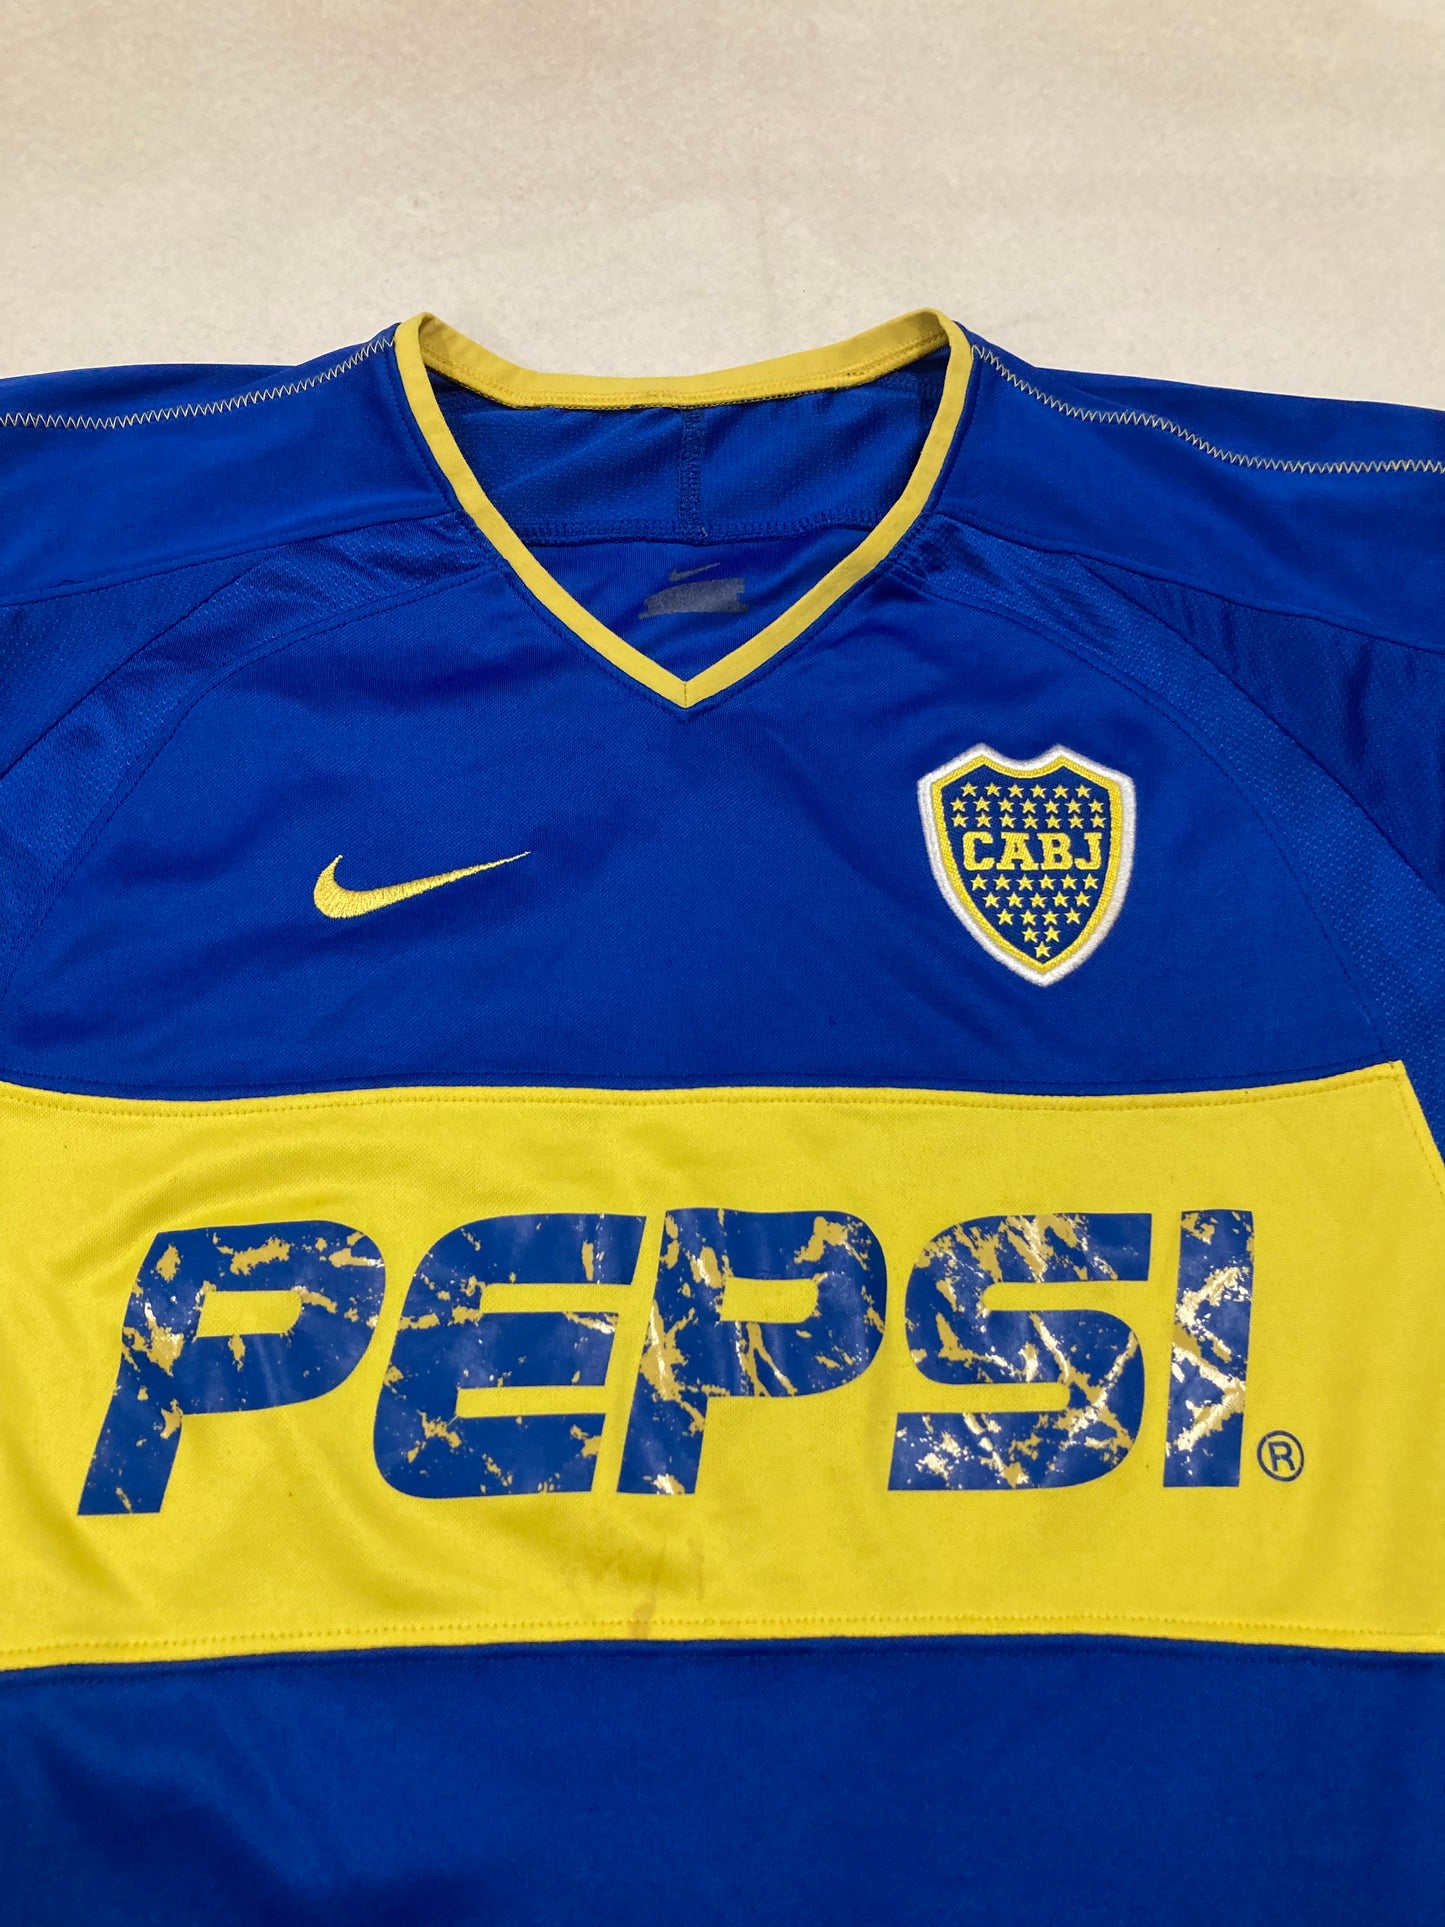 Camiseta Nike Boca Juniors 03/04 Vintage - S